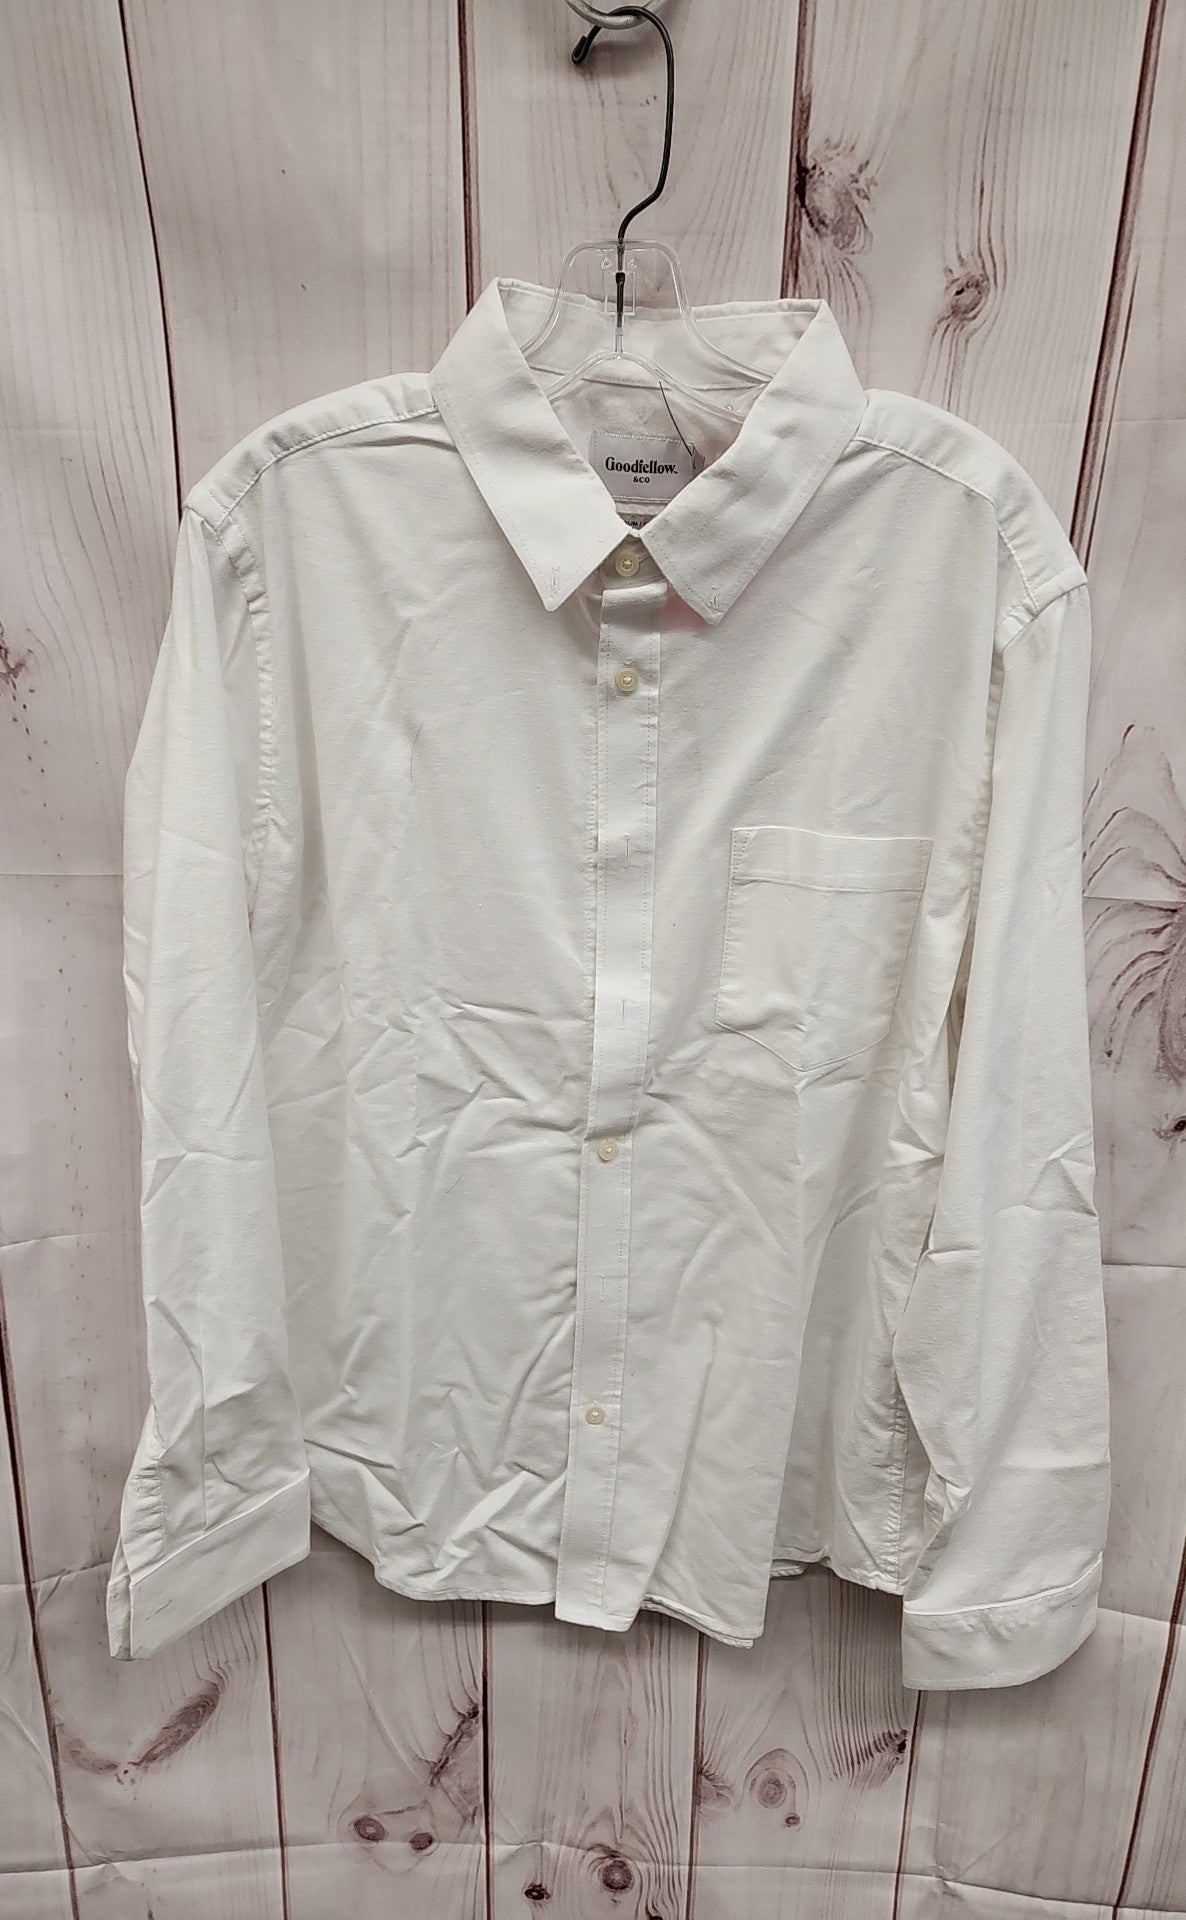 Goodfellow Men's Size L White Shirt